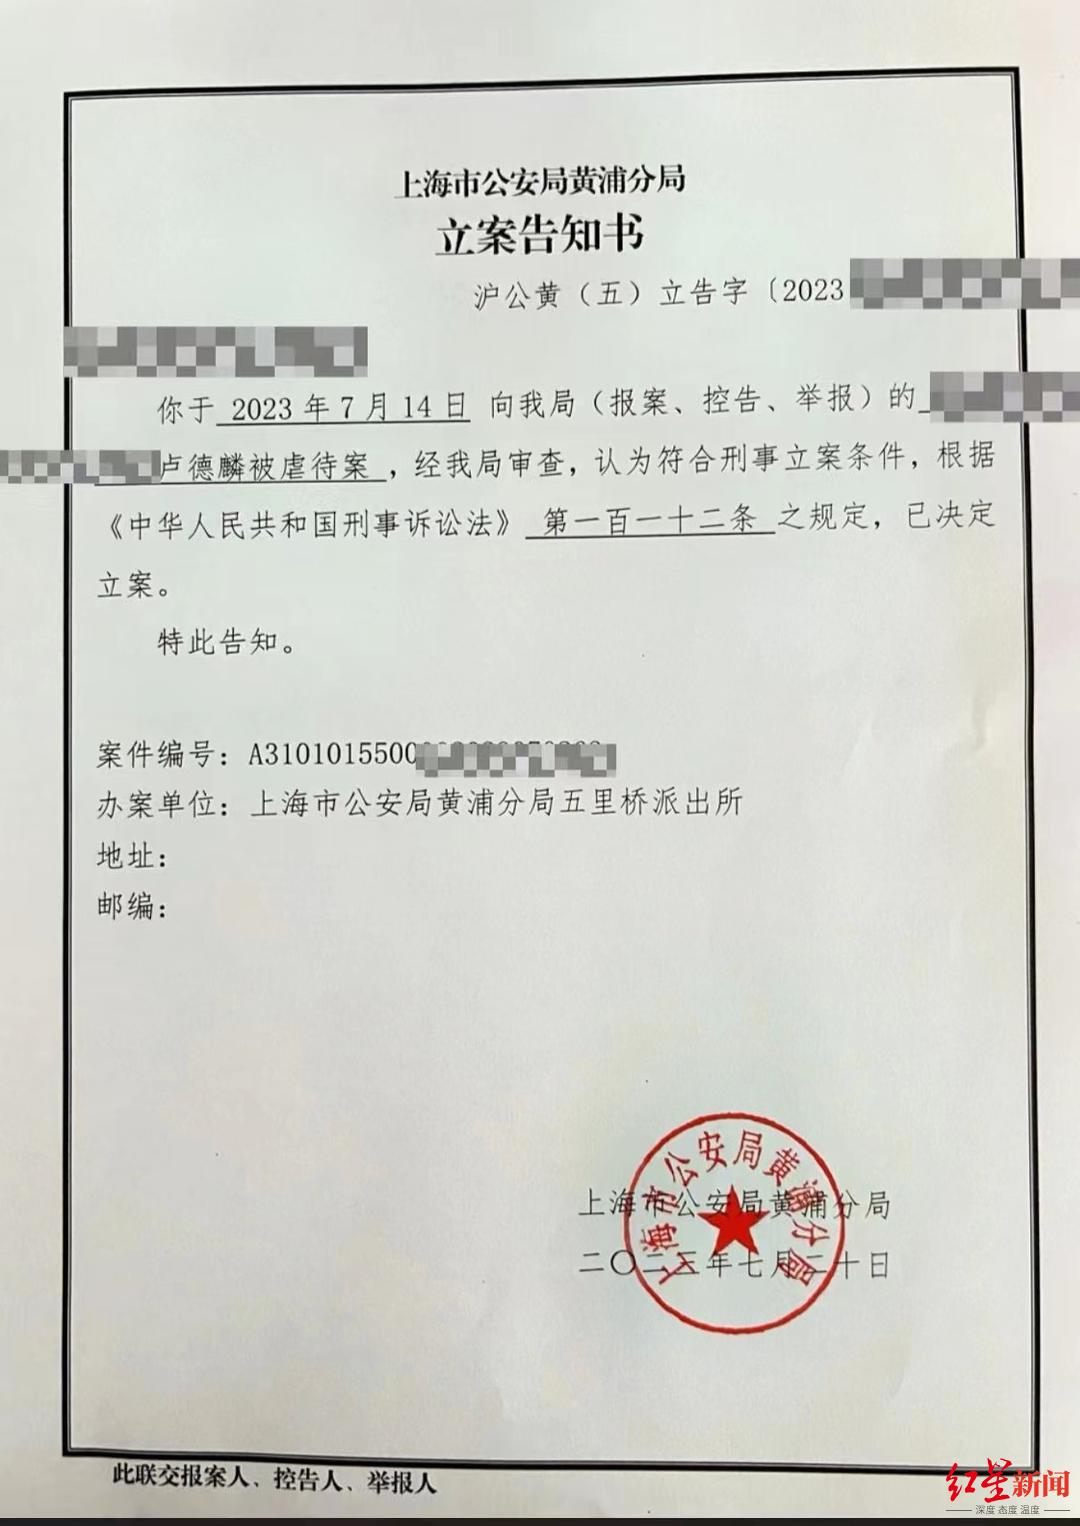 94岁老人网络举报保姆虐待并骗走250多万养老钱 上海警方已立案